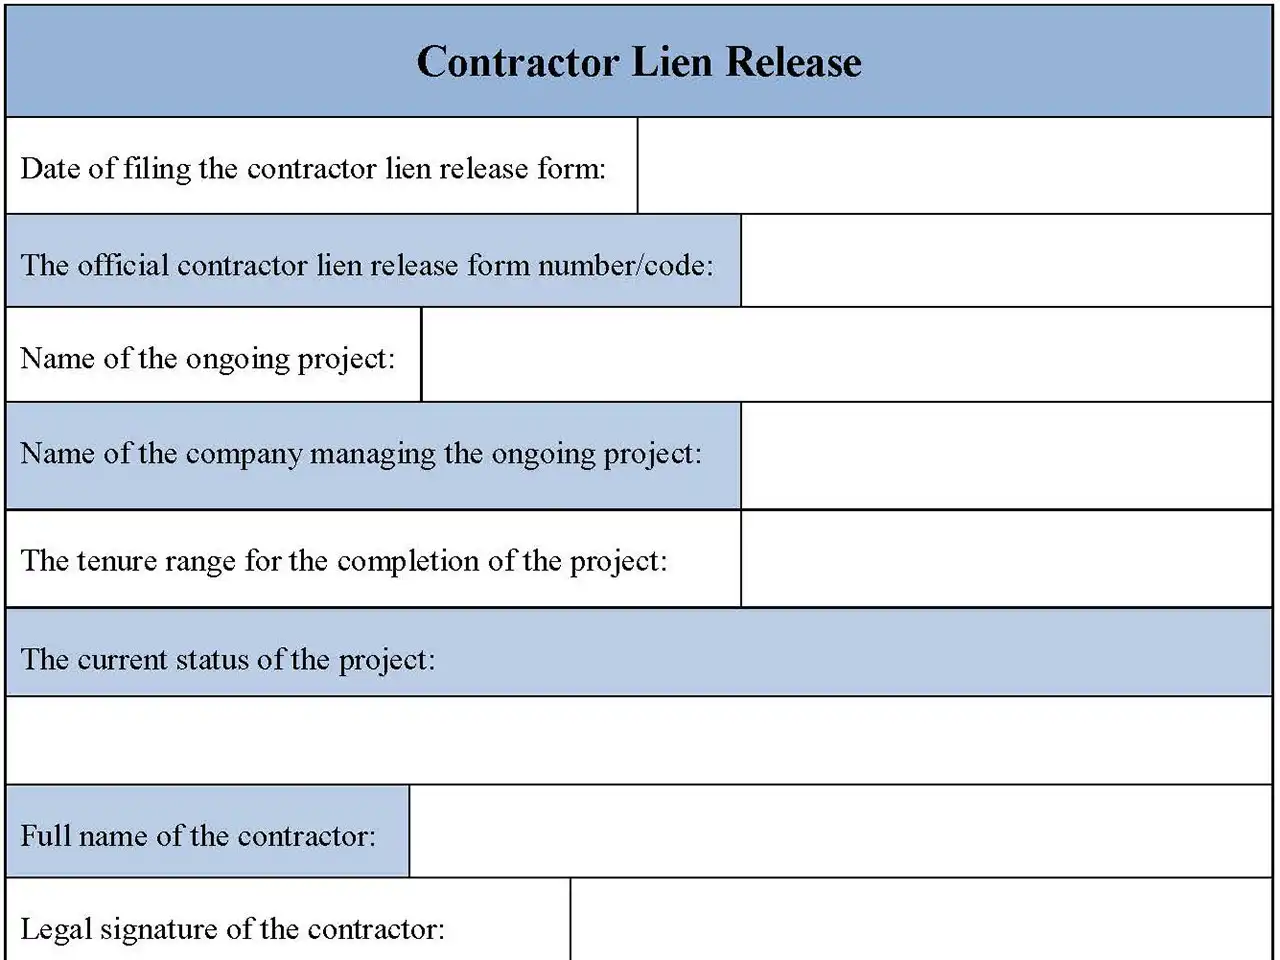 Contractor Lien Release Form